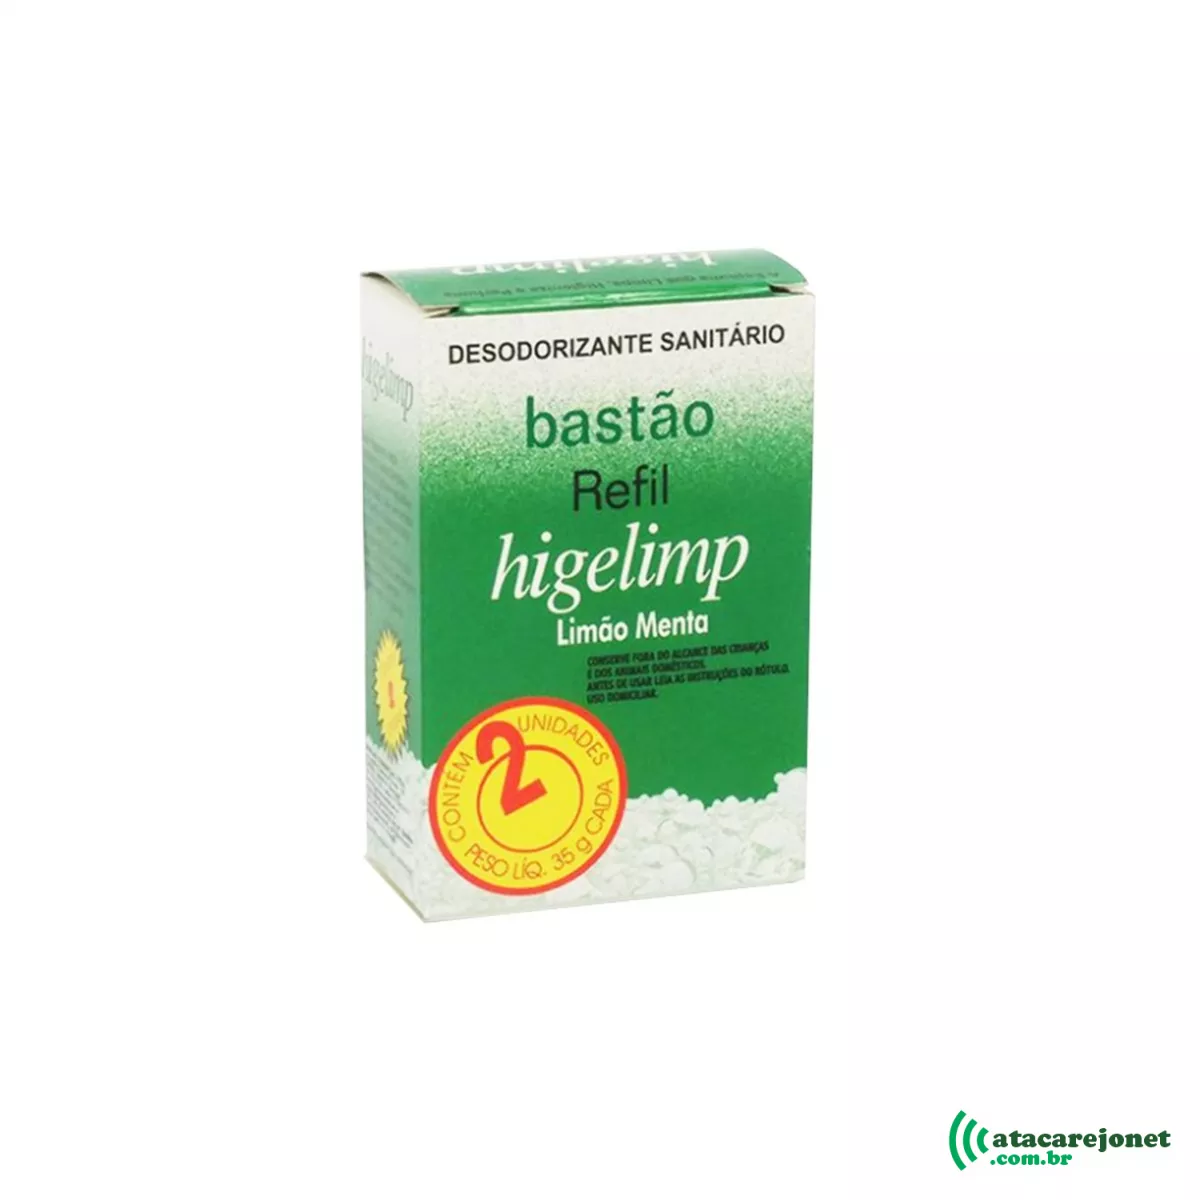 Desodorizante Sanitário Bastão Refil Higelimp 35g x 2 unidades Limão Menta - Sanilar